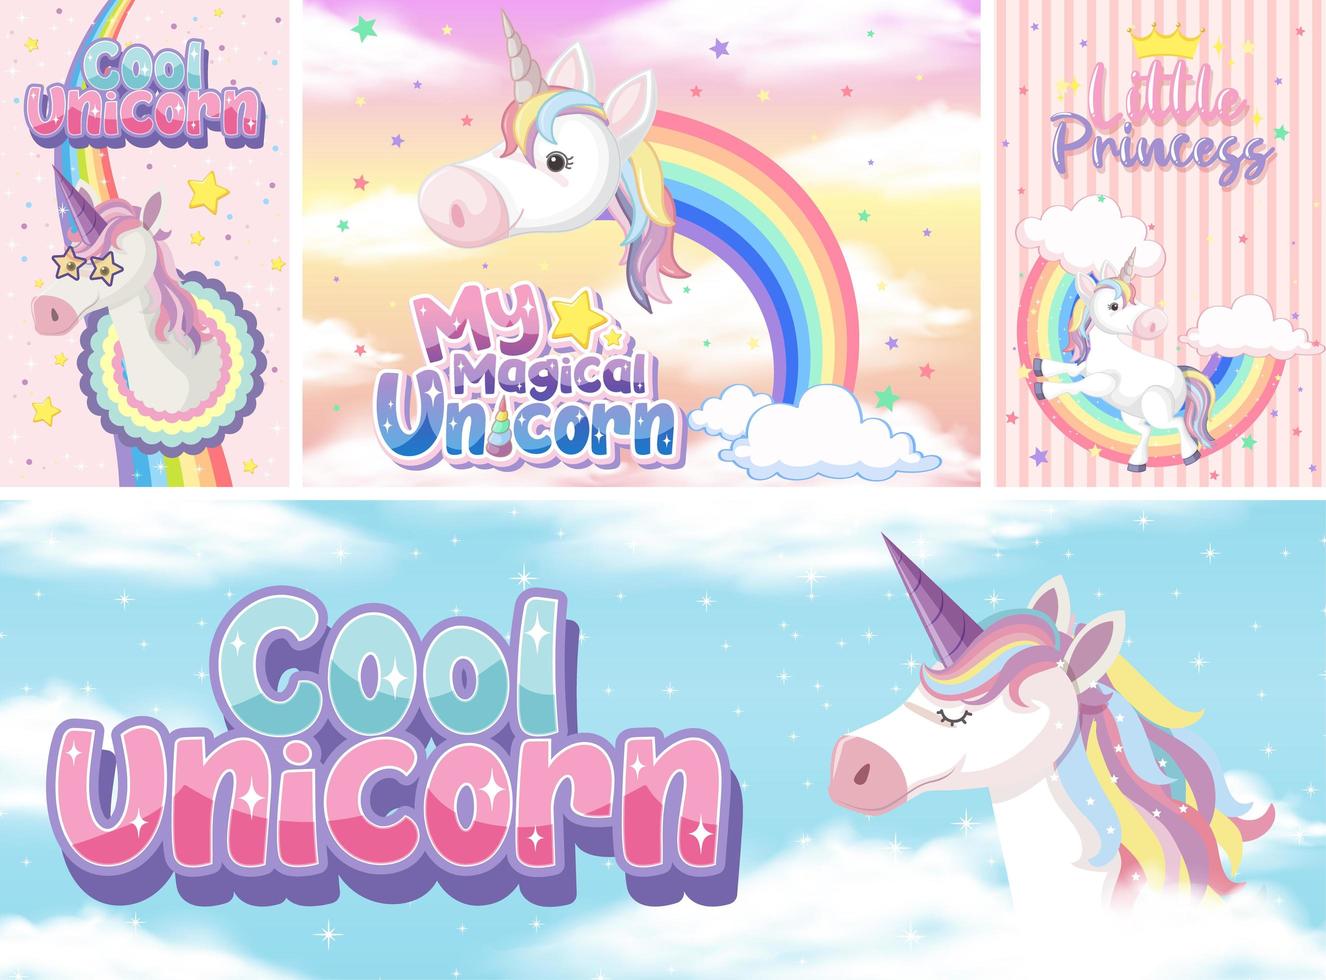 lindo banner de unicornio en color de fondo pastel vector